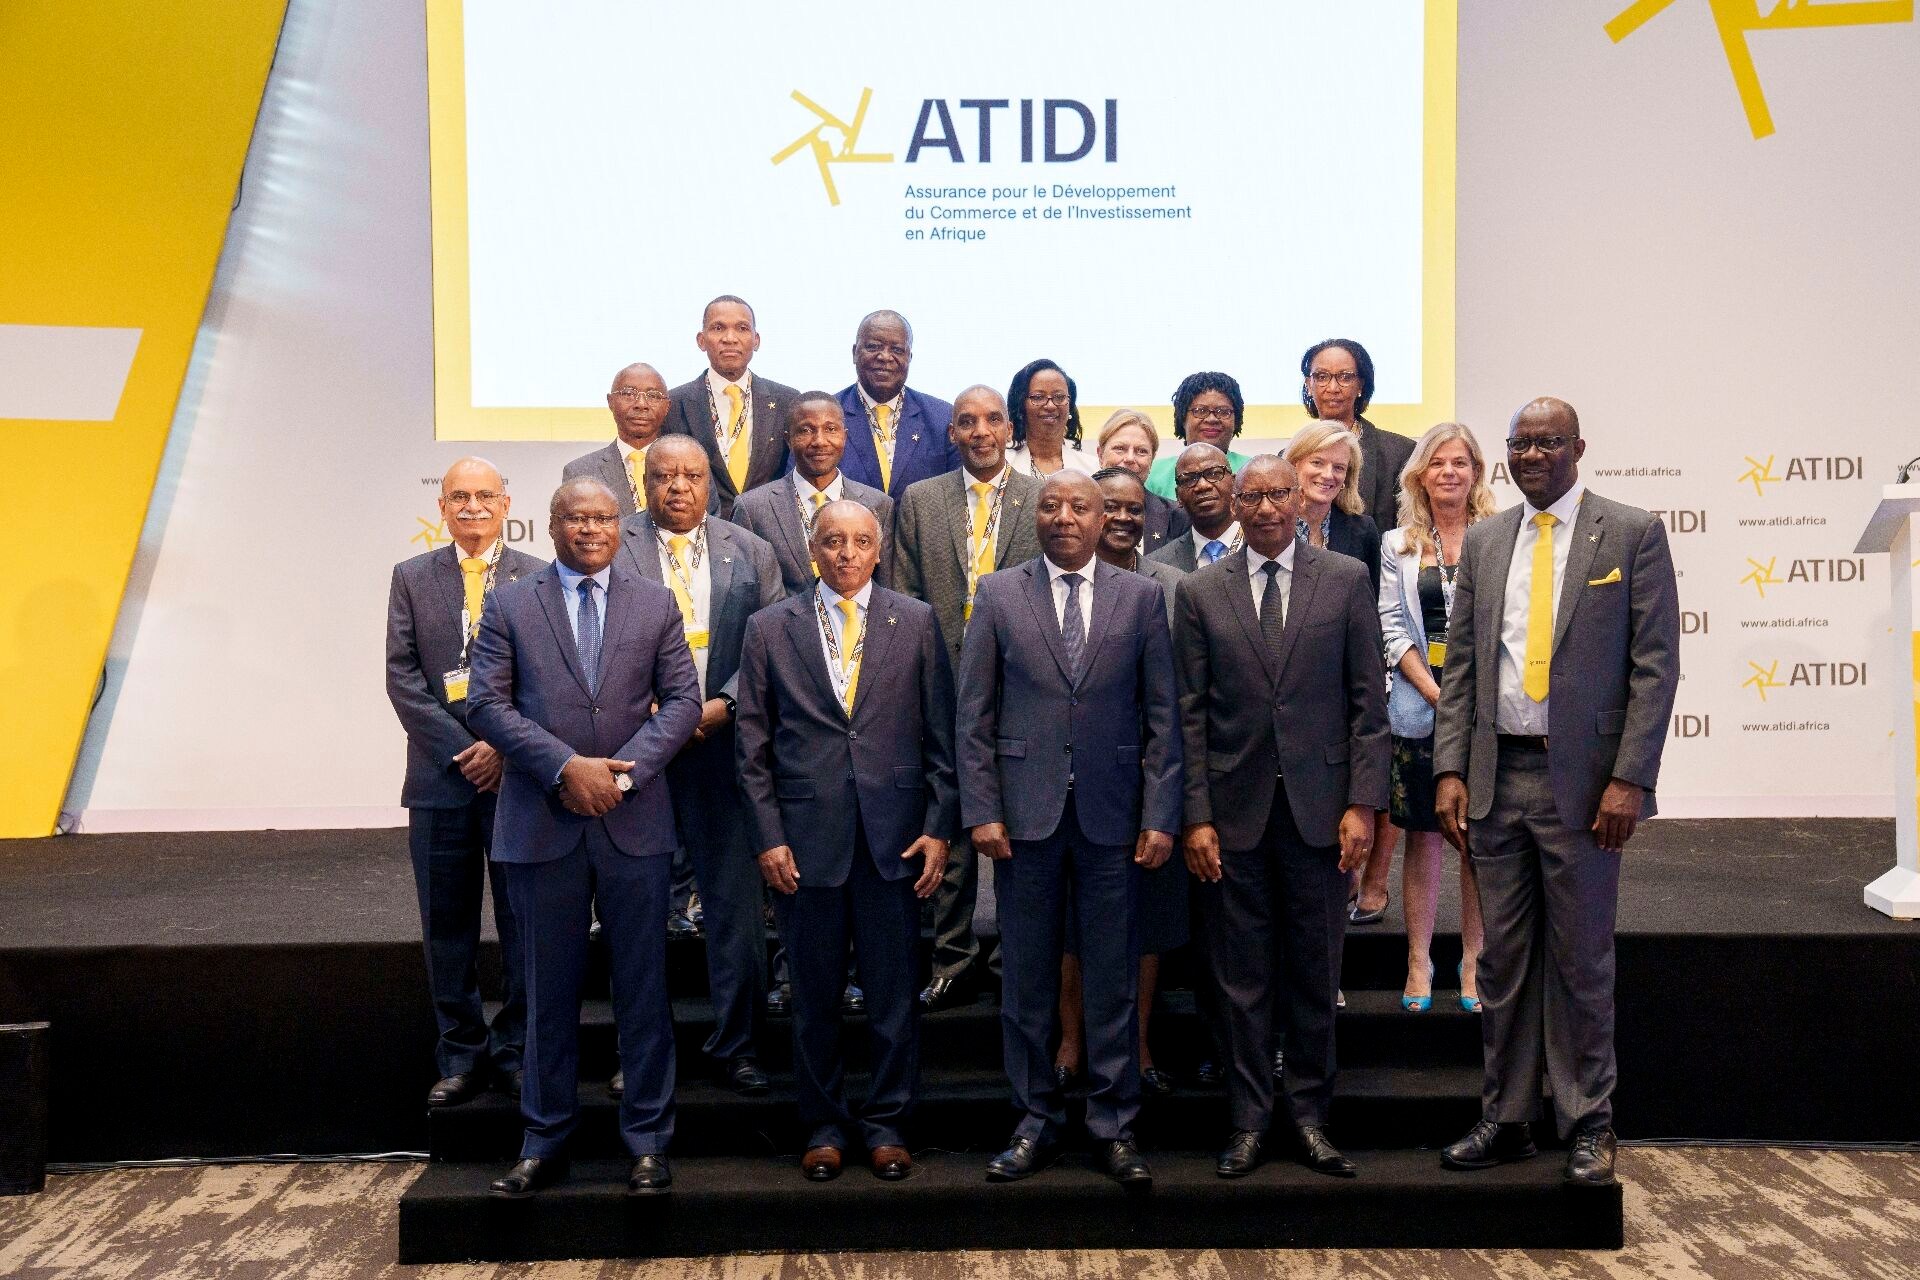 Assemblée générale annuelle de l’Atidi : L’agence panafricaine d'assurance dévoile sa nouvelle identité